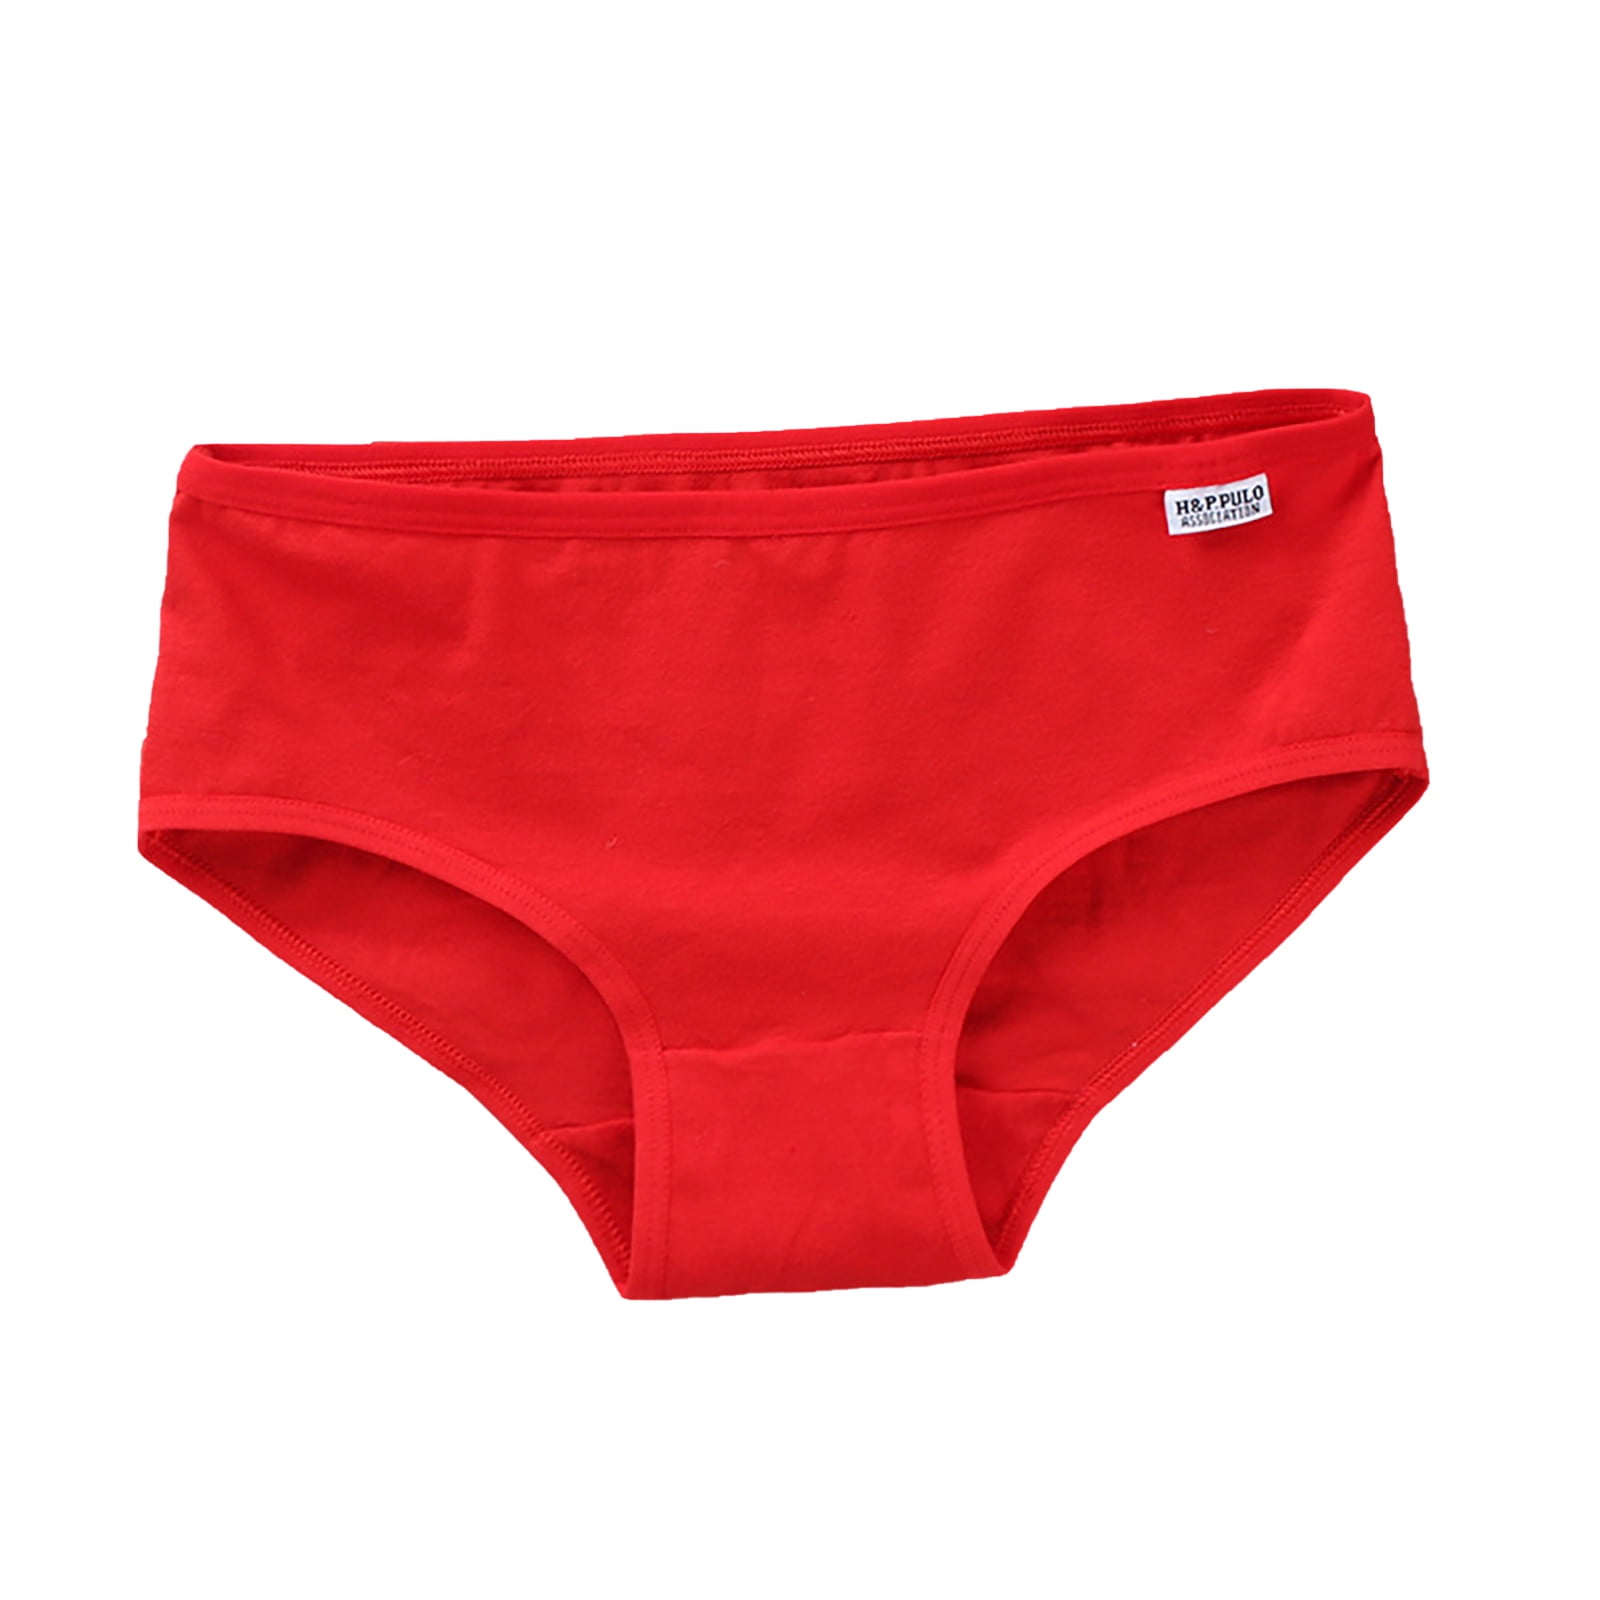 QIIBURR 100% Cotton Underwear Girls underwear Pure Cotton Briefs Solid ...